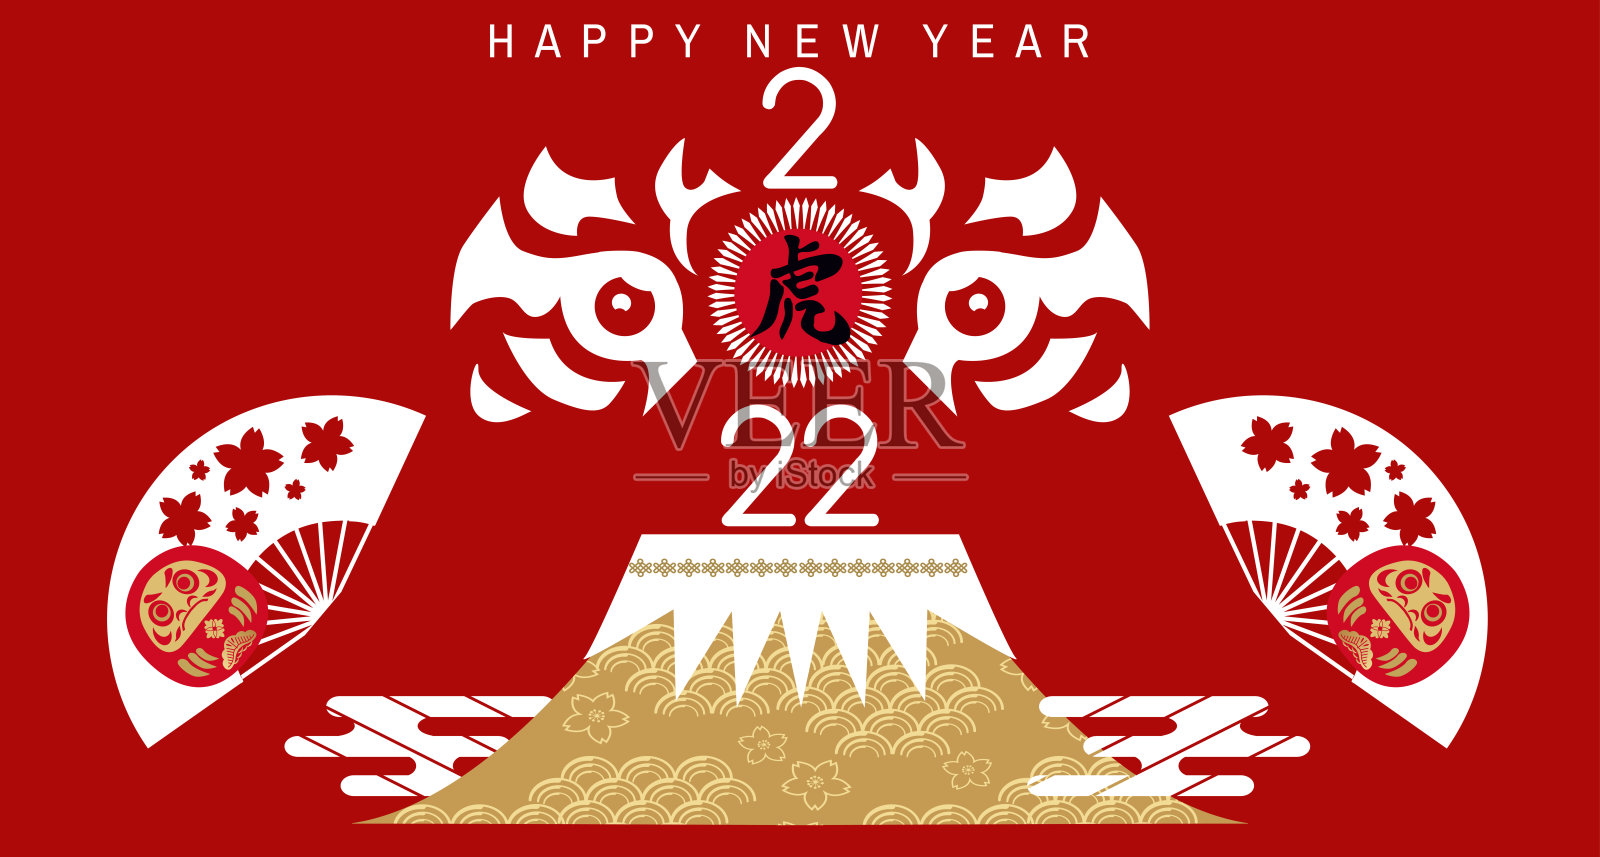 祝中国新的2022年虎年快乐。设计模板素材